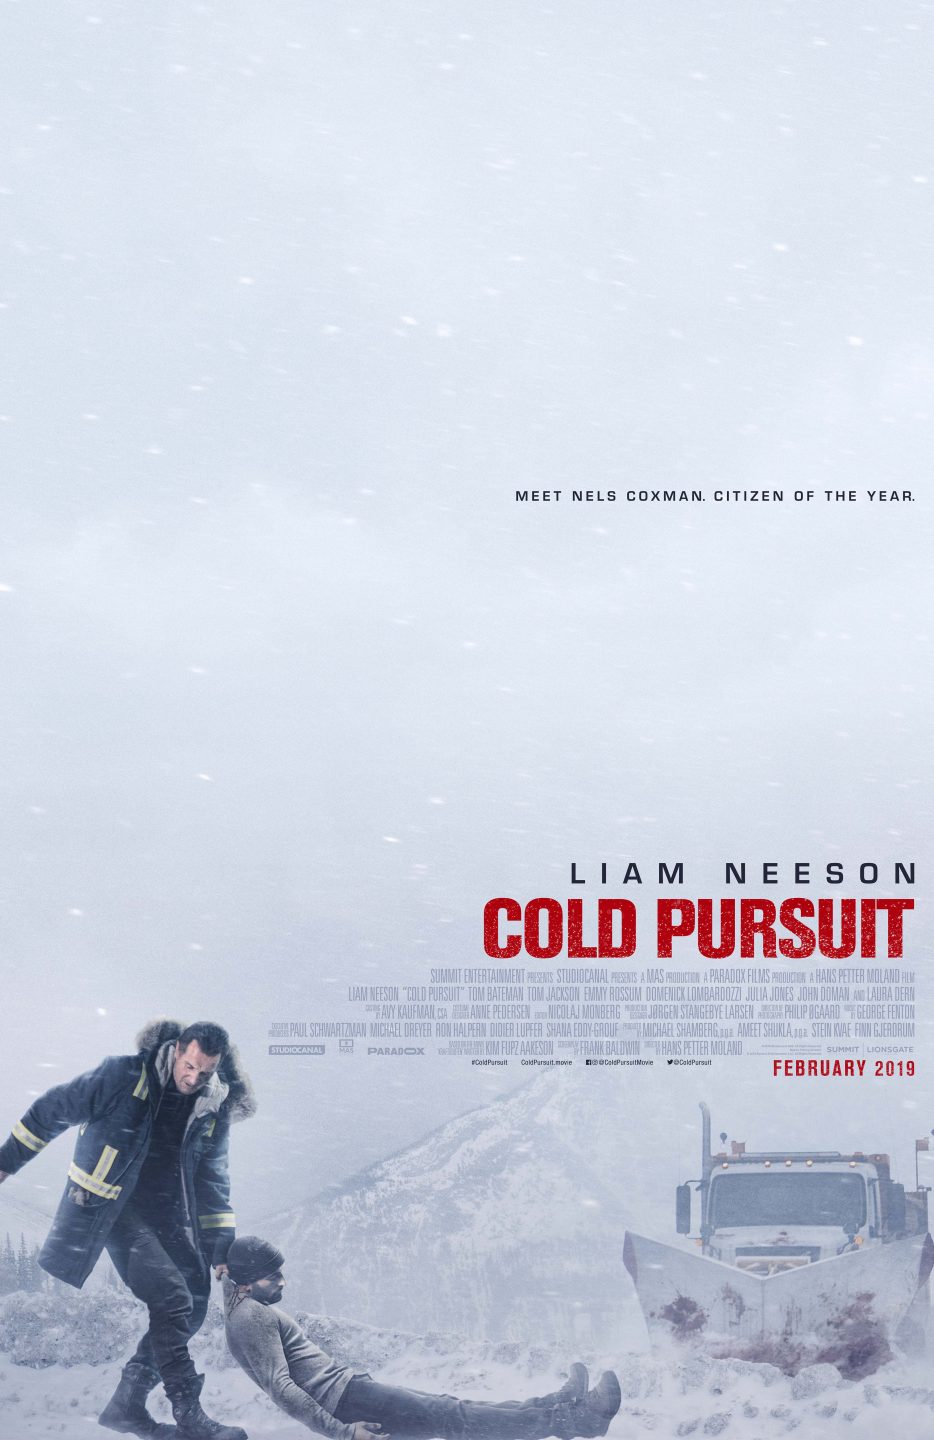 Cold Pursuit poster (Lionsgate)